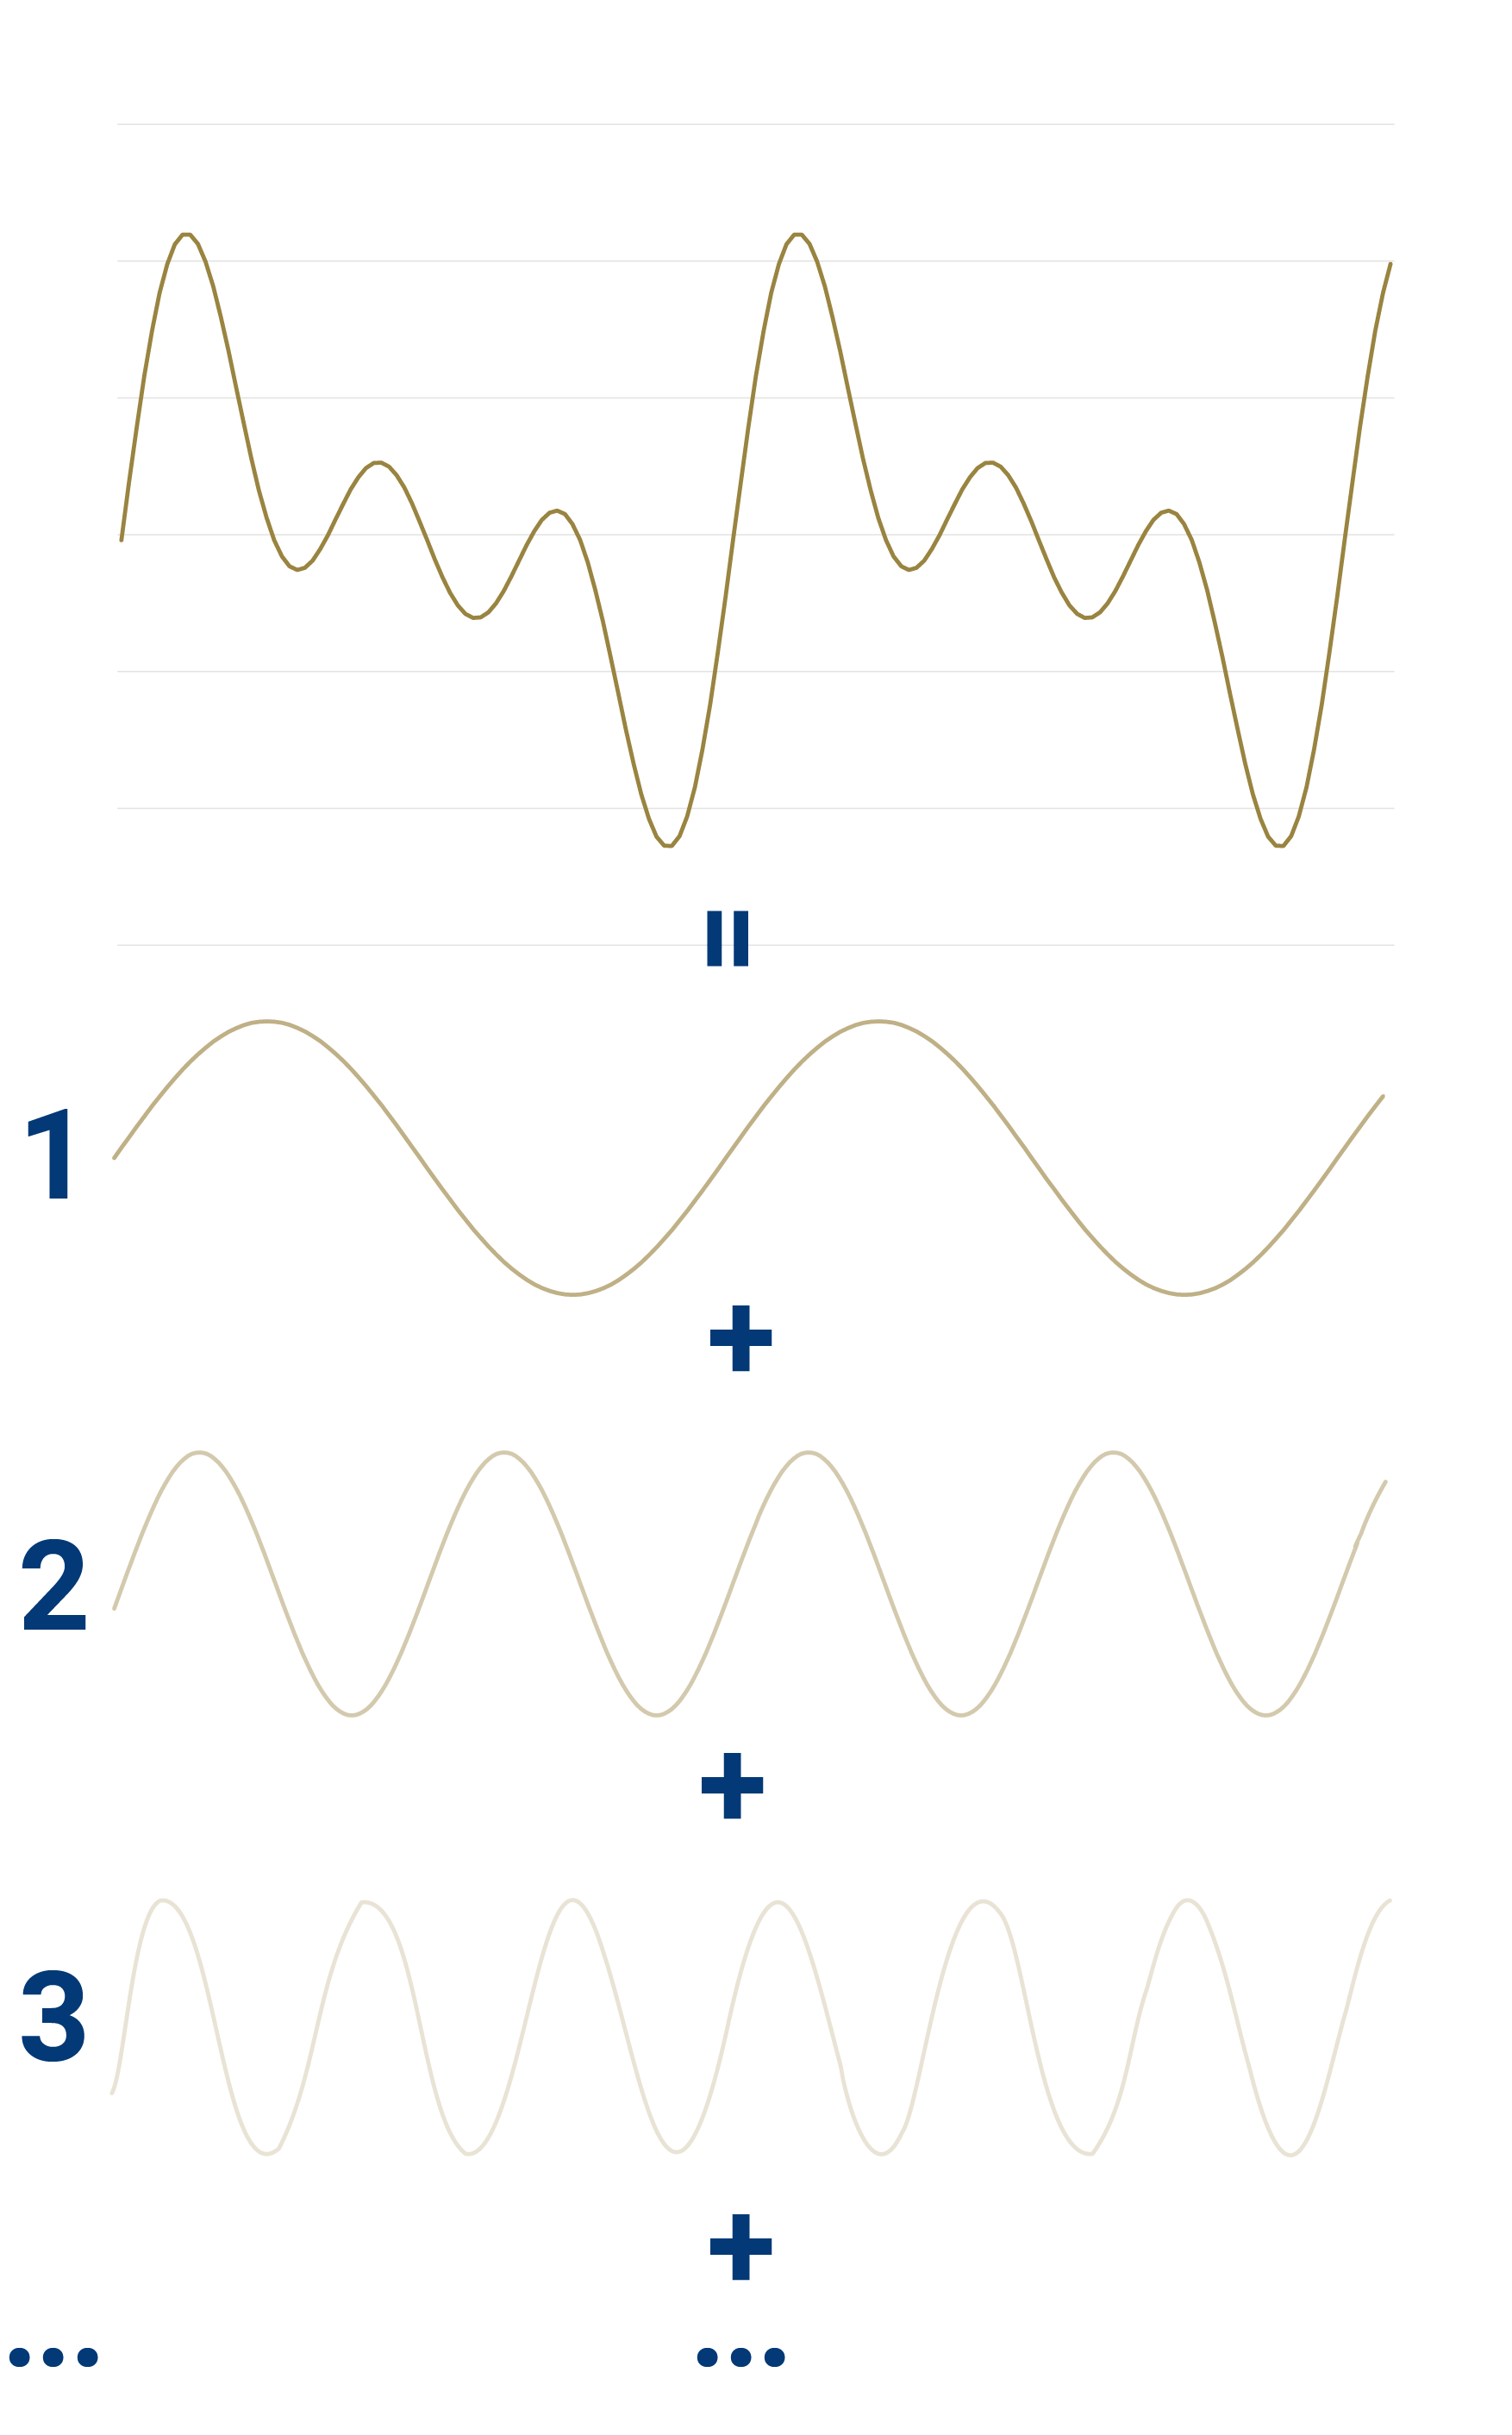 Deze onregelmatige vorm, kan wiskundig omgevormd worden in een som van meerdere sinusoïdale profielen